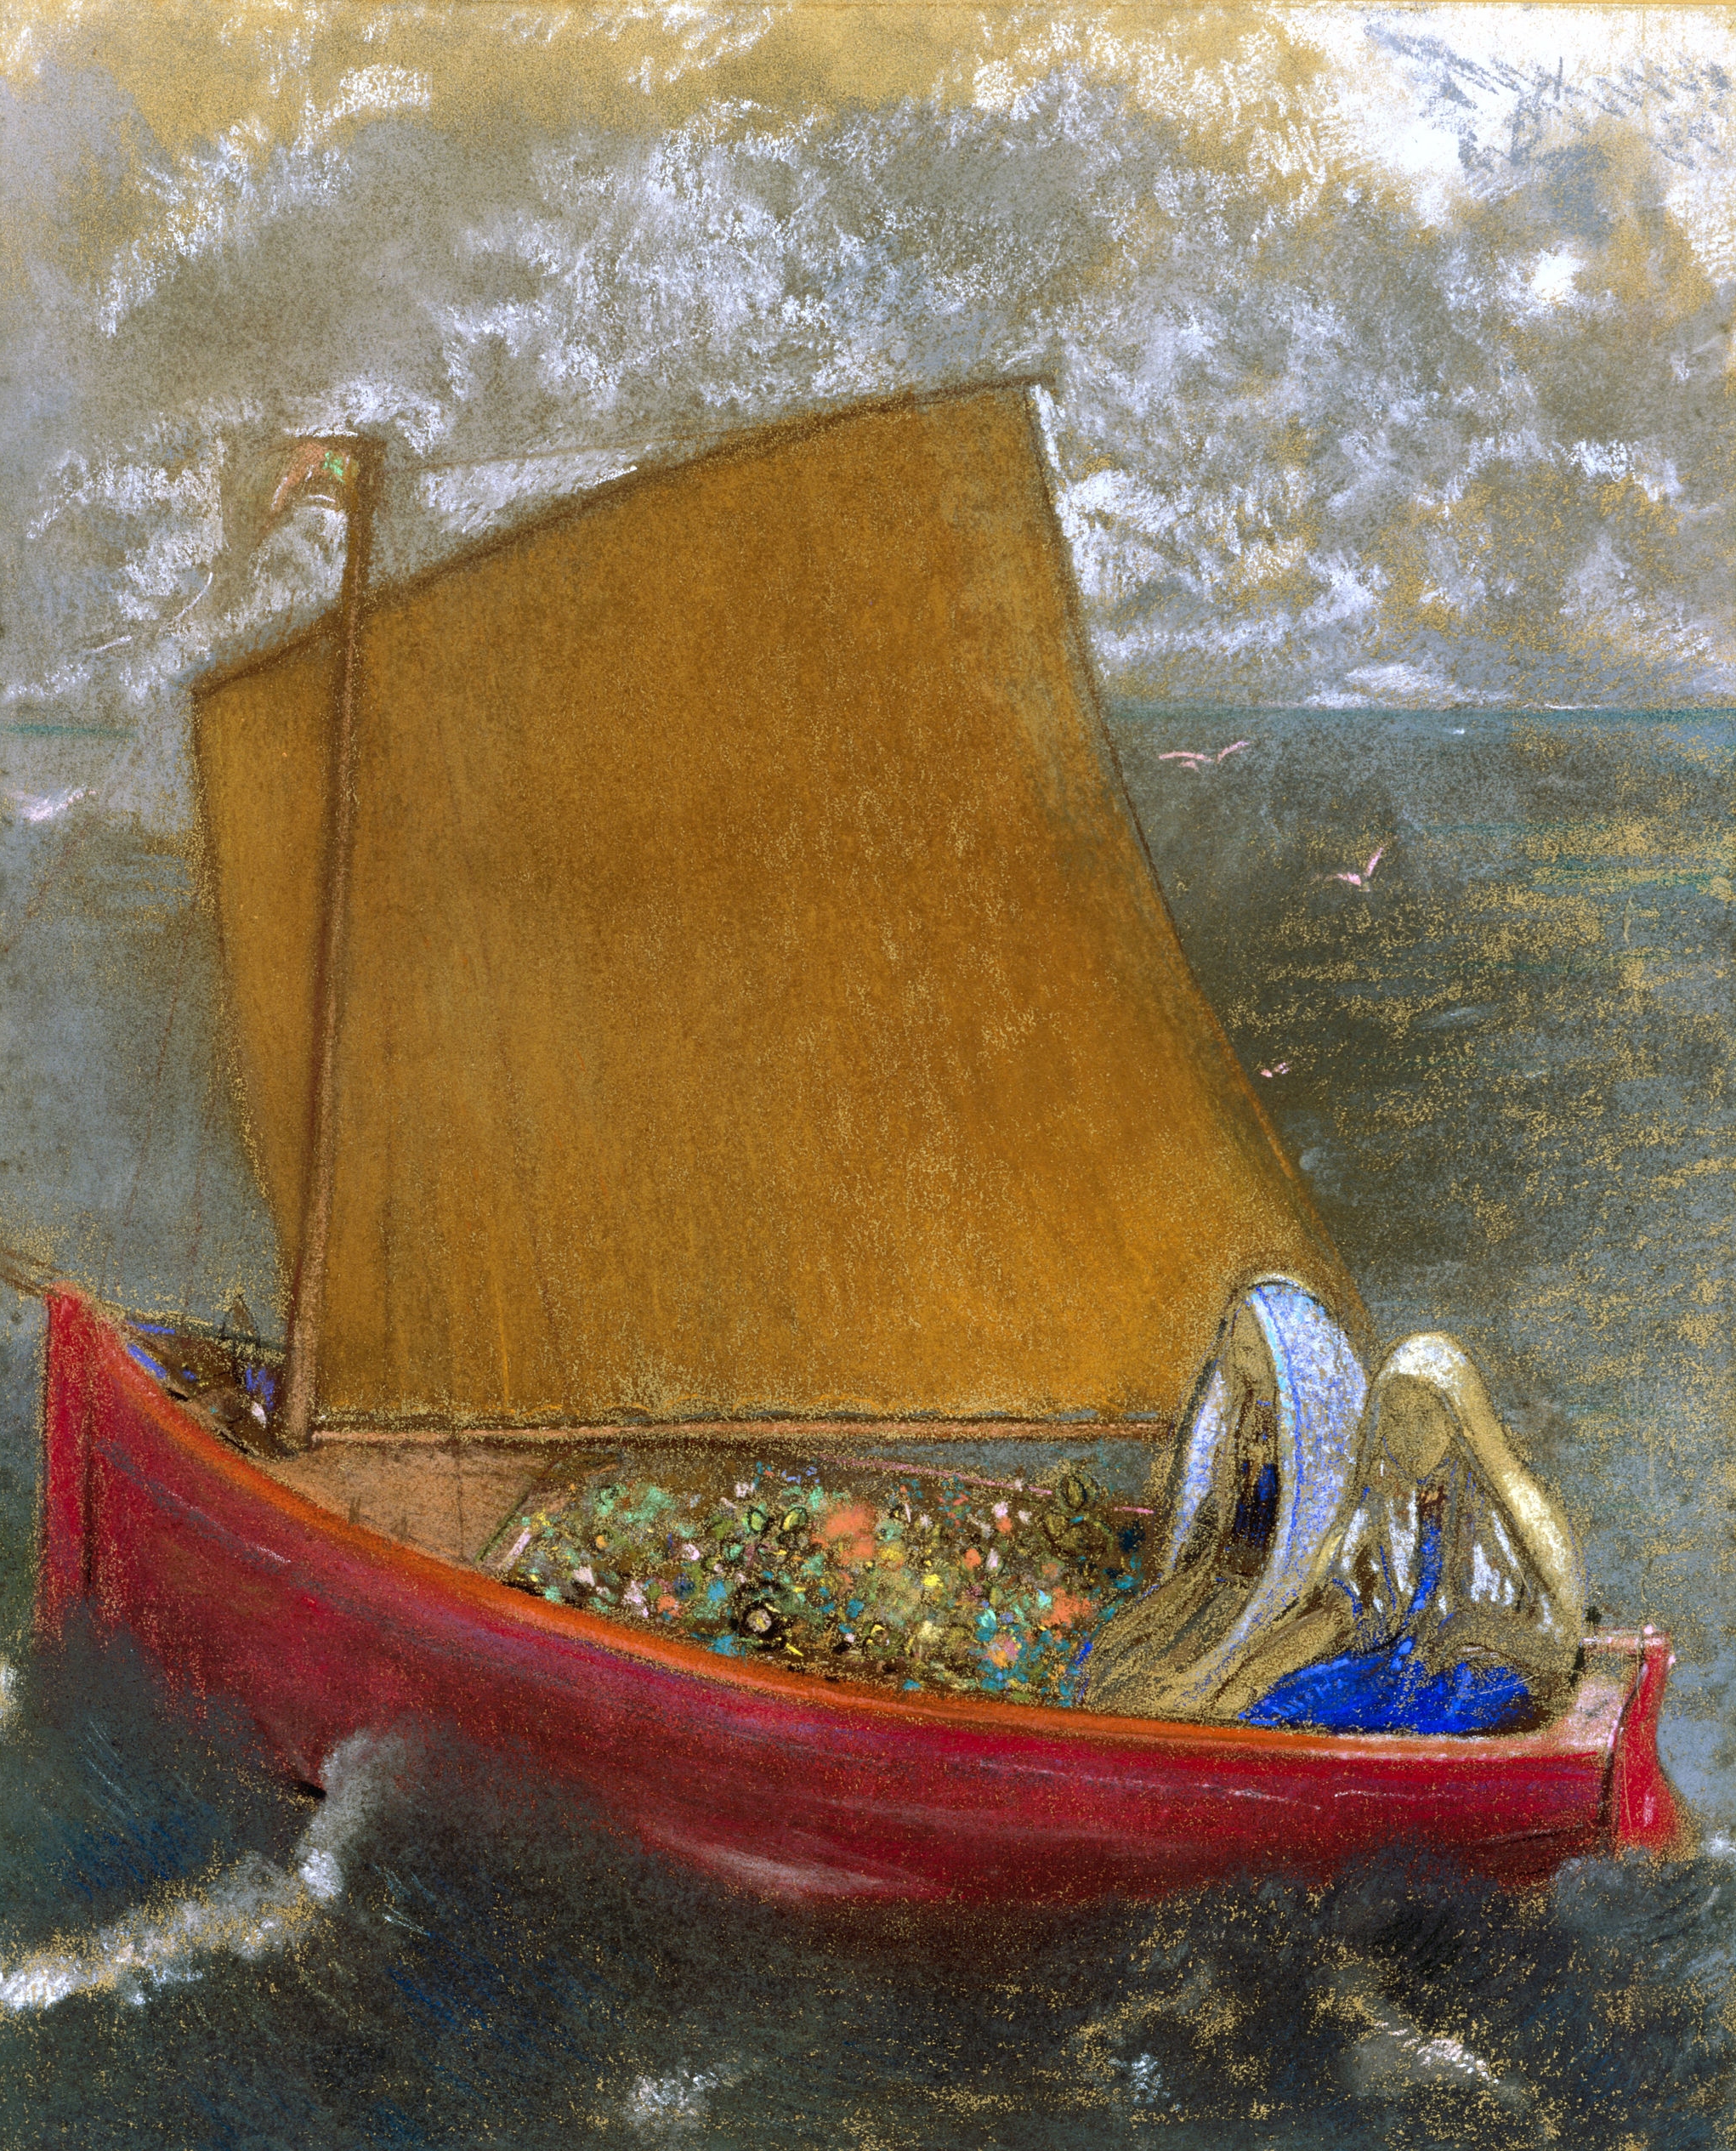 黃帆 by Odilon Redon - 1905 - 23x 18 1/2 英寸 